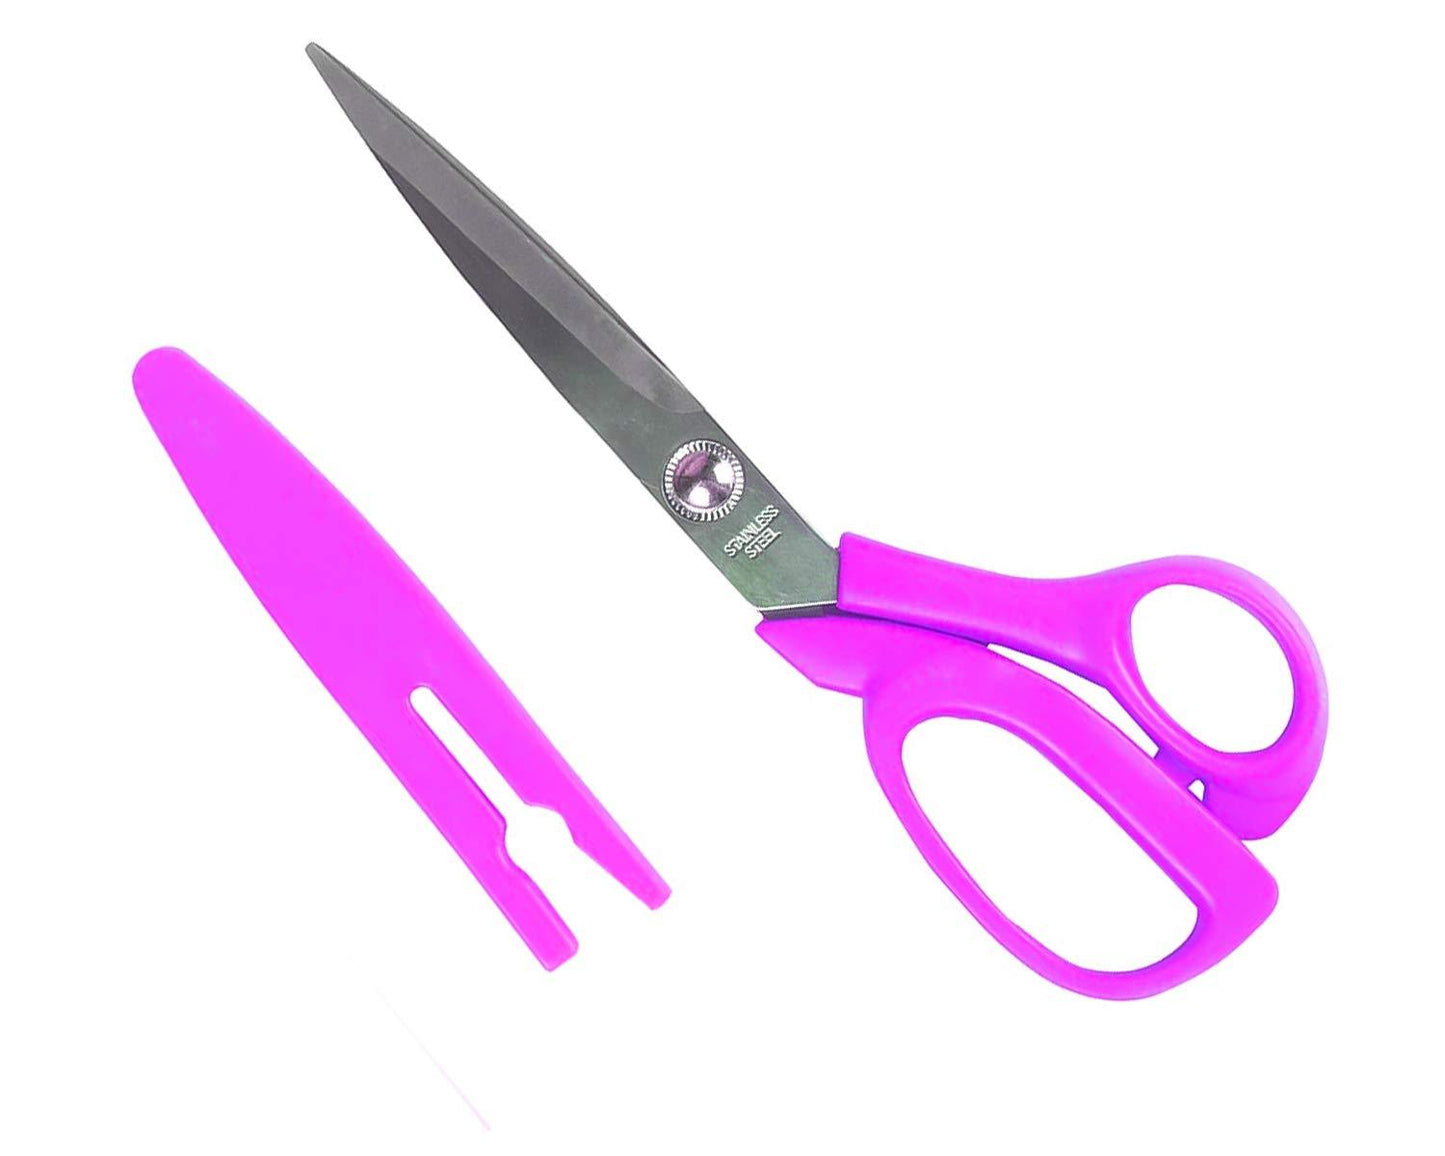 Carbo Titanium Stainless Steel Scissors (10.5 inch)